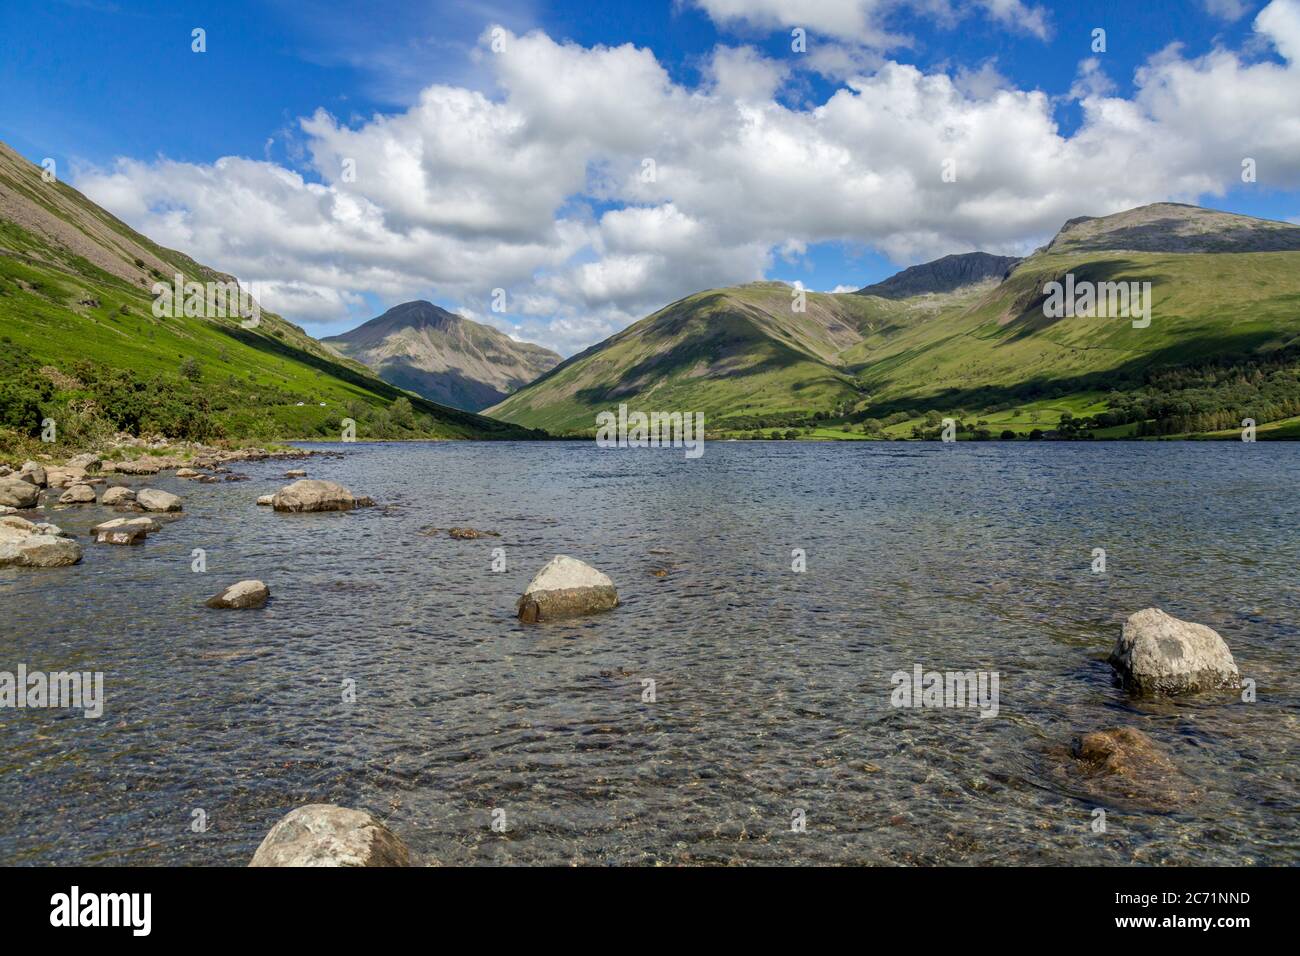 Die Ufer des Wassers, See im Lake District National Park, England. Berge und Hügel des Western Lake District im Hintergrund. Stockfoto